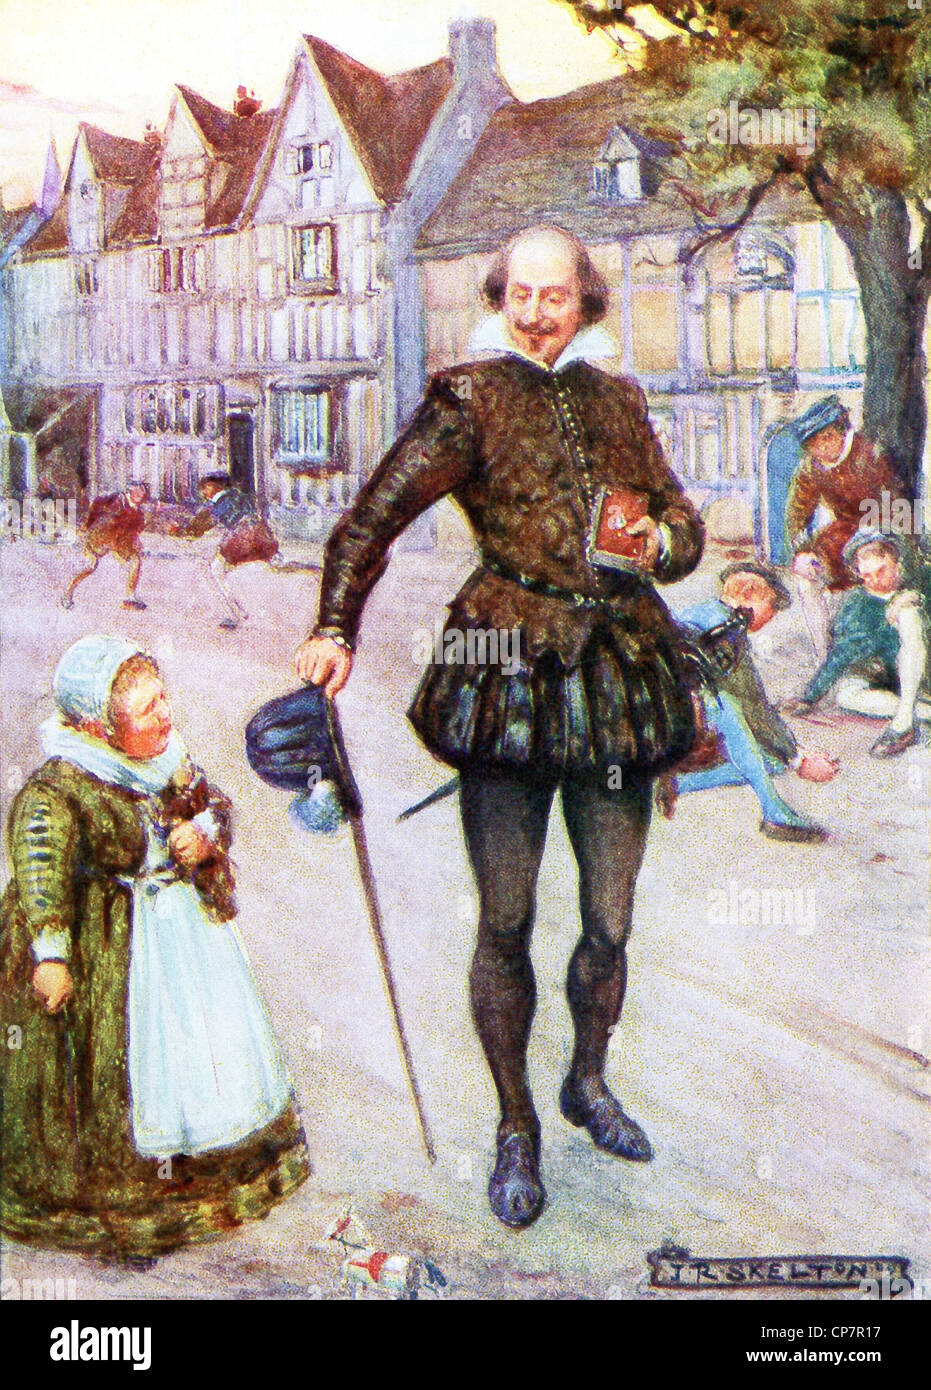 William Shakespeare (mort en 1616), un poète et dramaturge anglais, promenades le long d'une rue à Stratford upon Avon. Banque D'Images